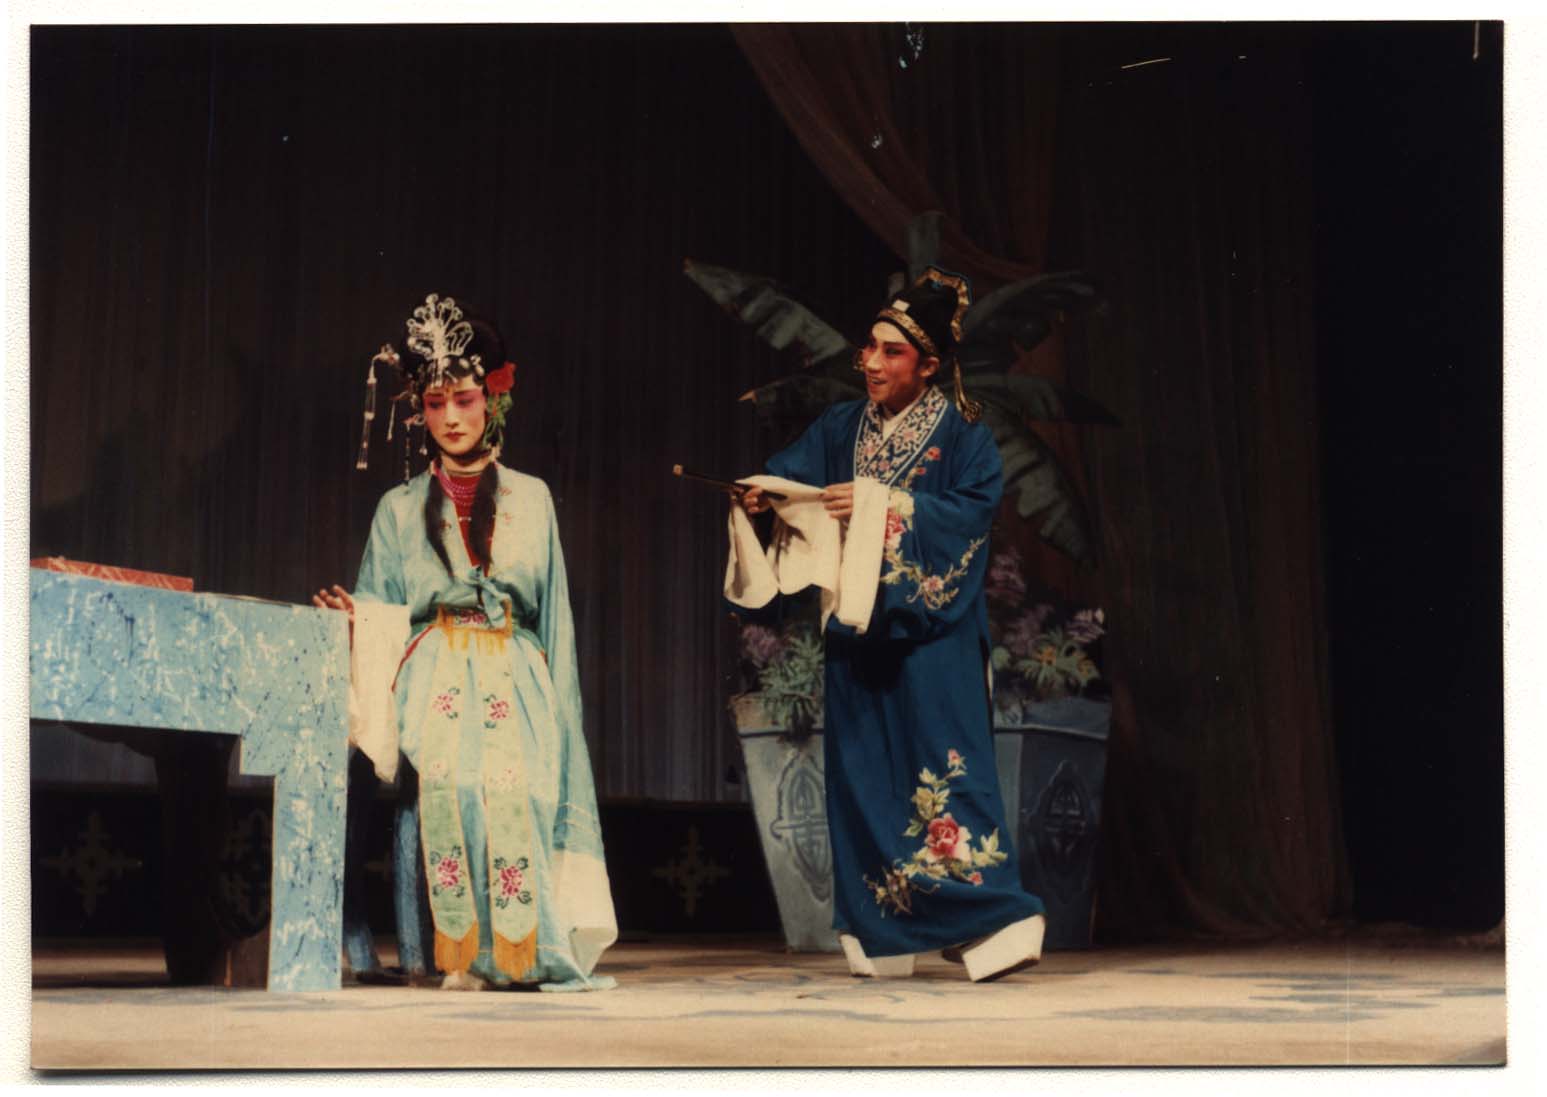 吉林二人转专场文艺演出惊艳日喀则市第十七届珠峰文化旅游节